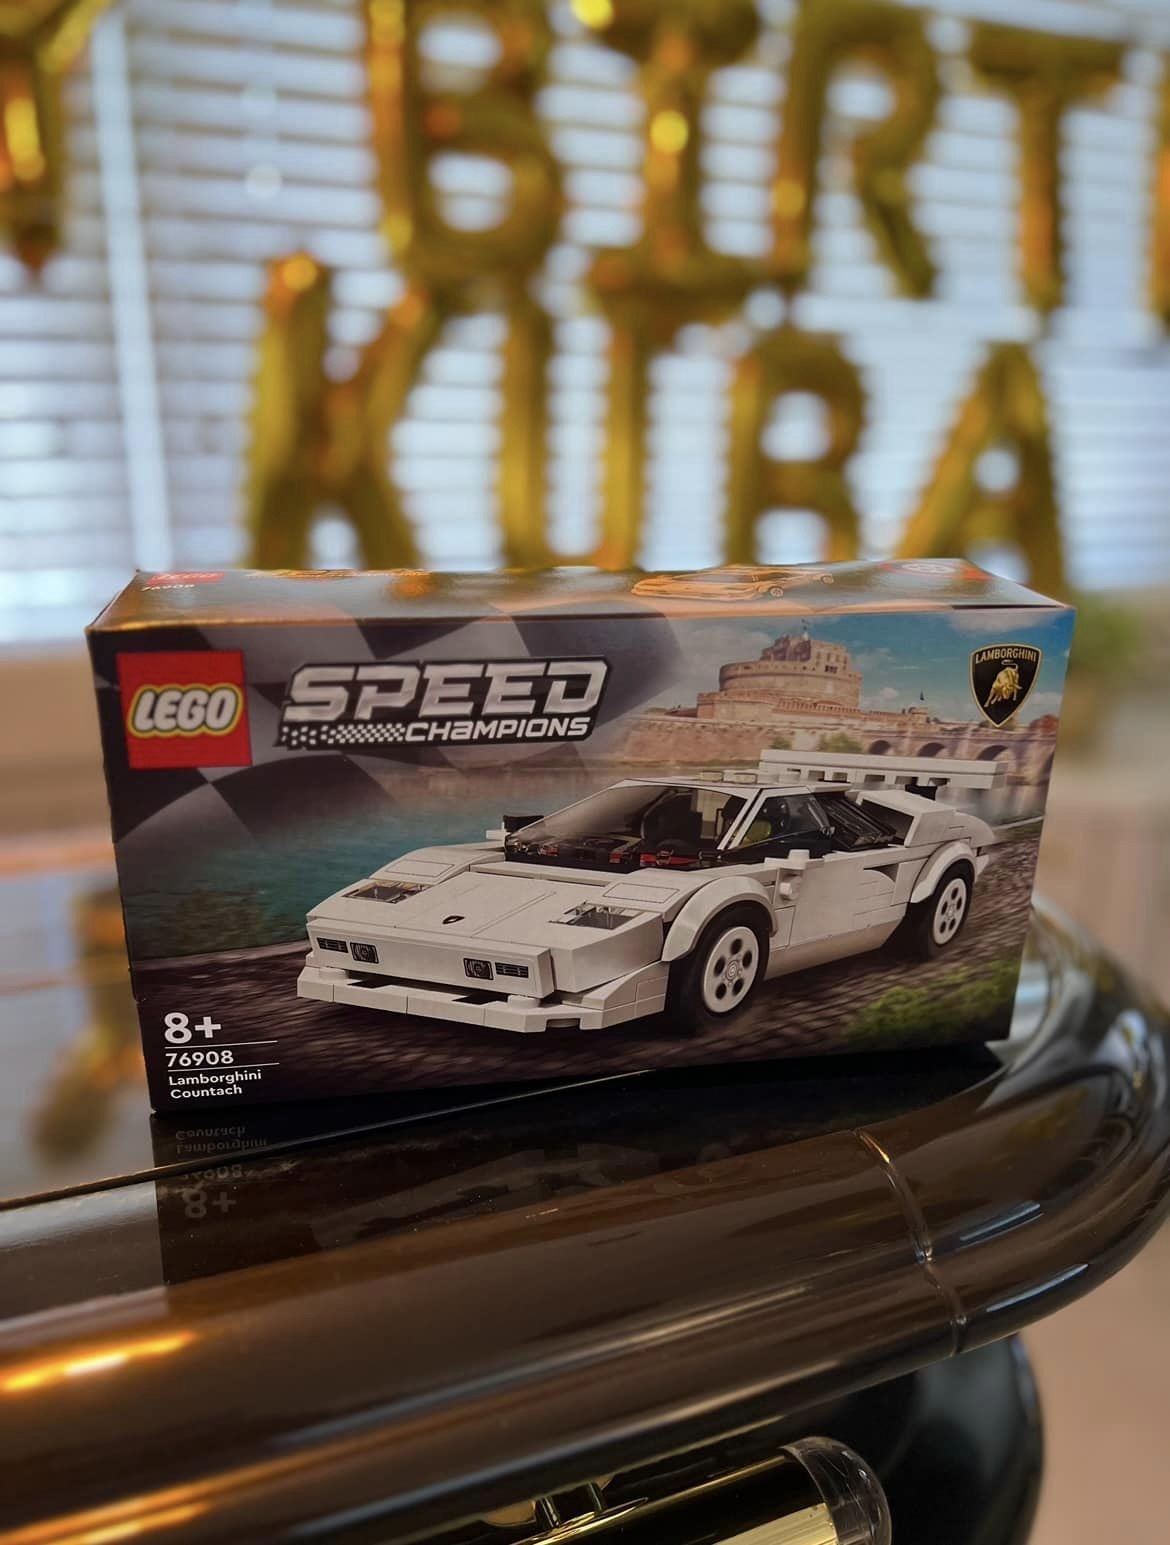 Zestaw LEGO z samochodem, który Kuba Wojewódzki otrzymał na 60. urodziny